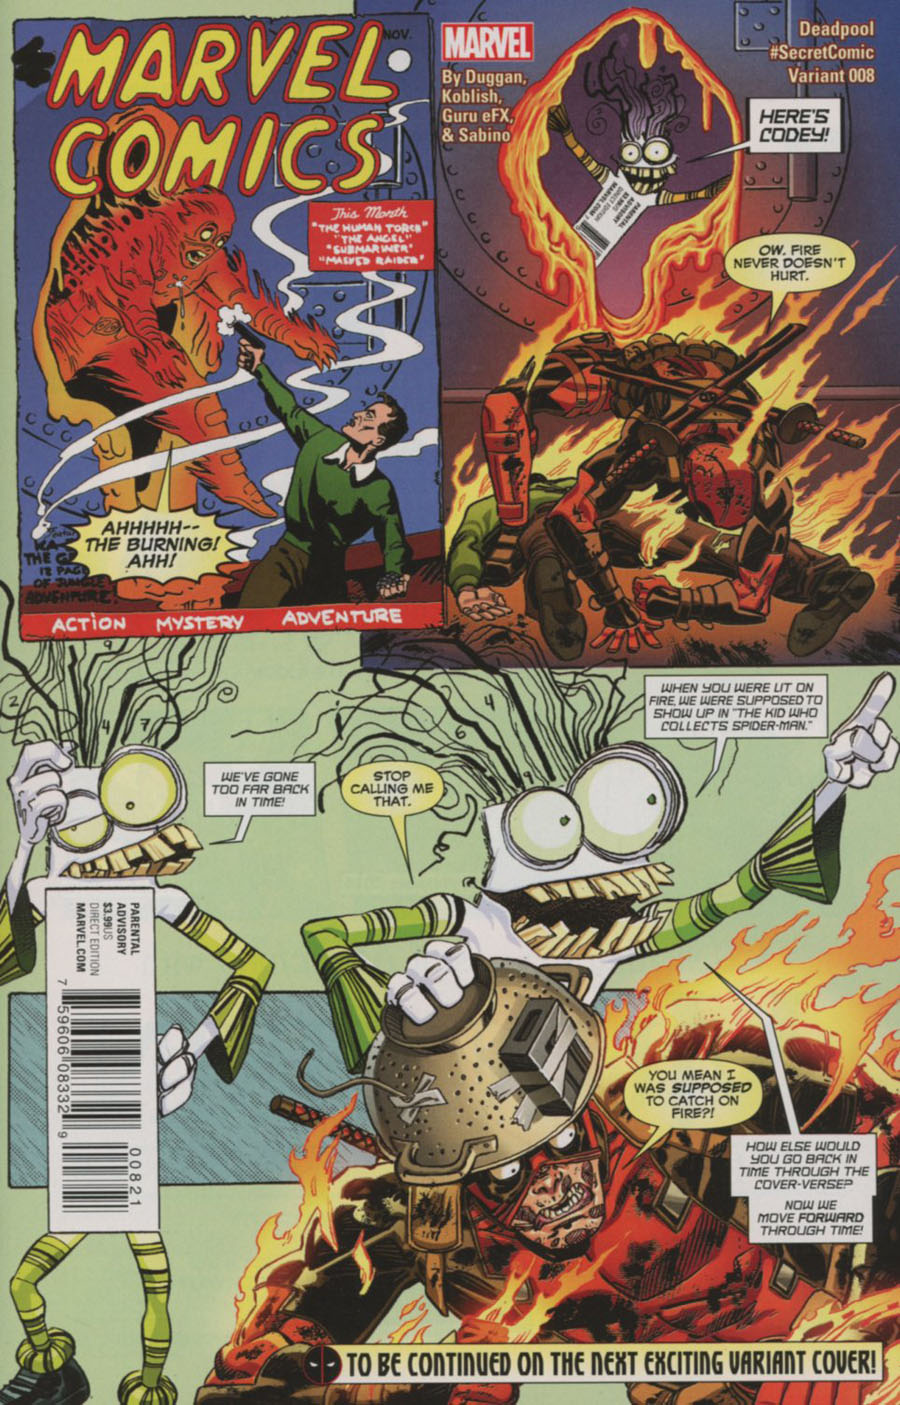 Deadpool Vol 5 #8 Cover B Variant Scott Koblish Secret Comic Cover